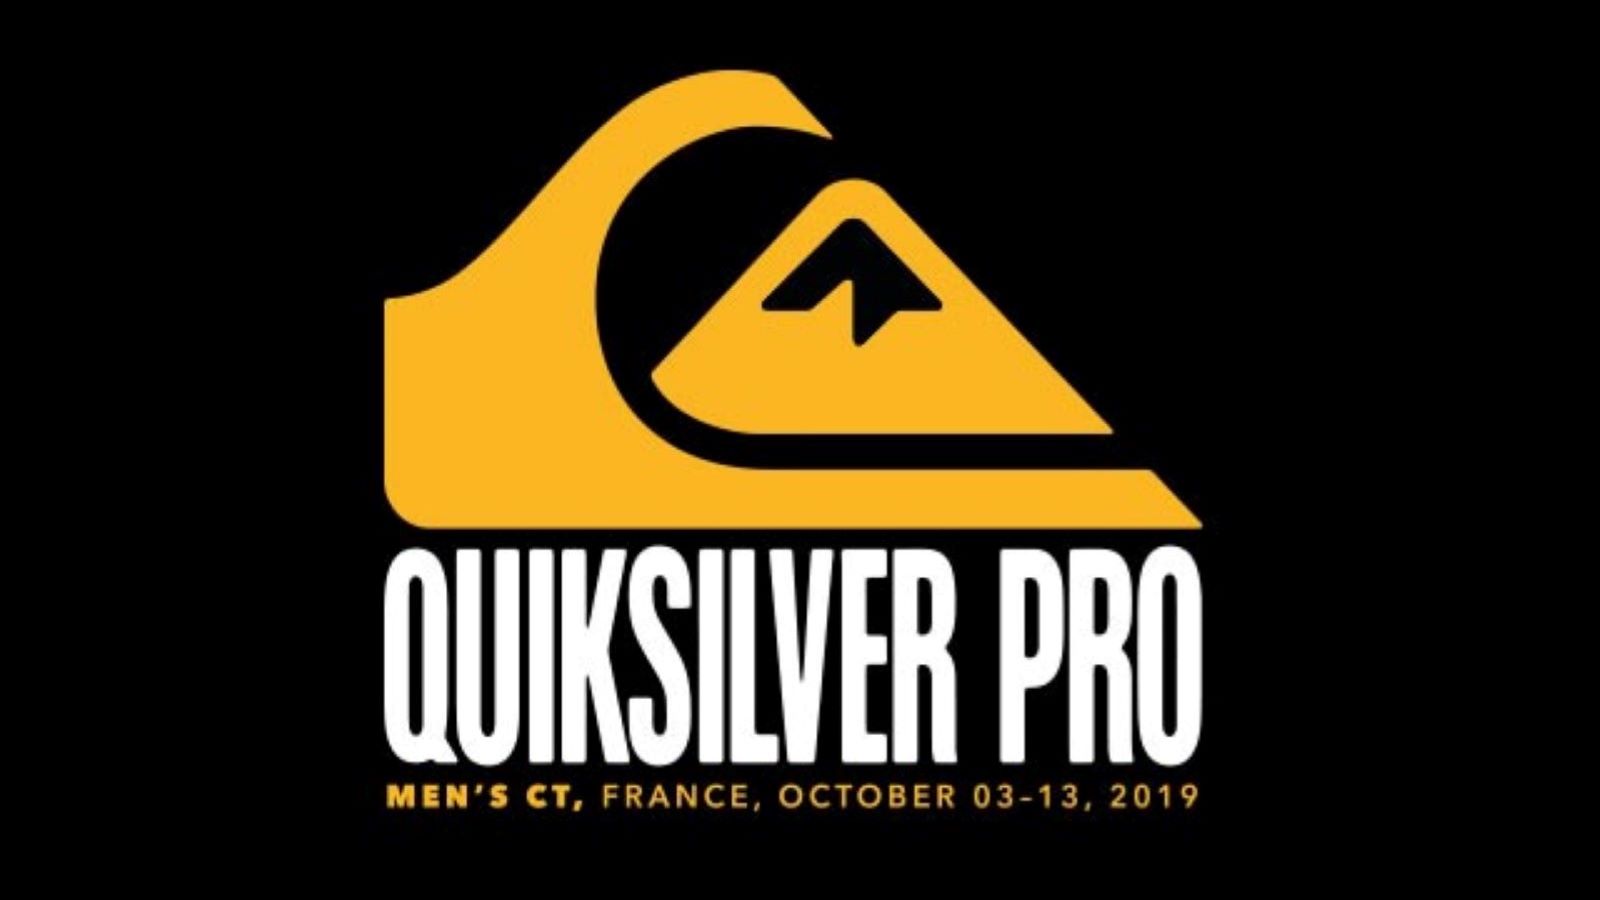 Quiksilver pro 2019